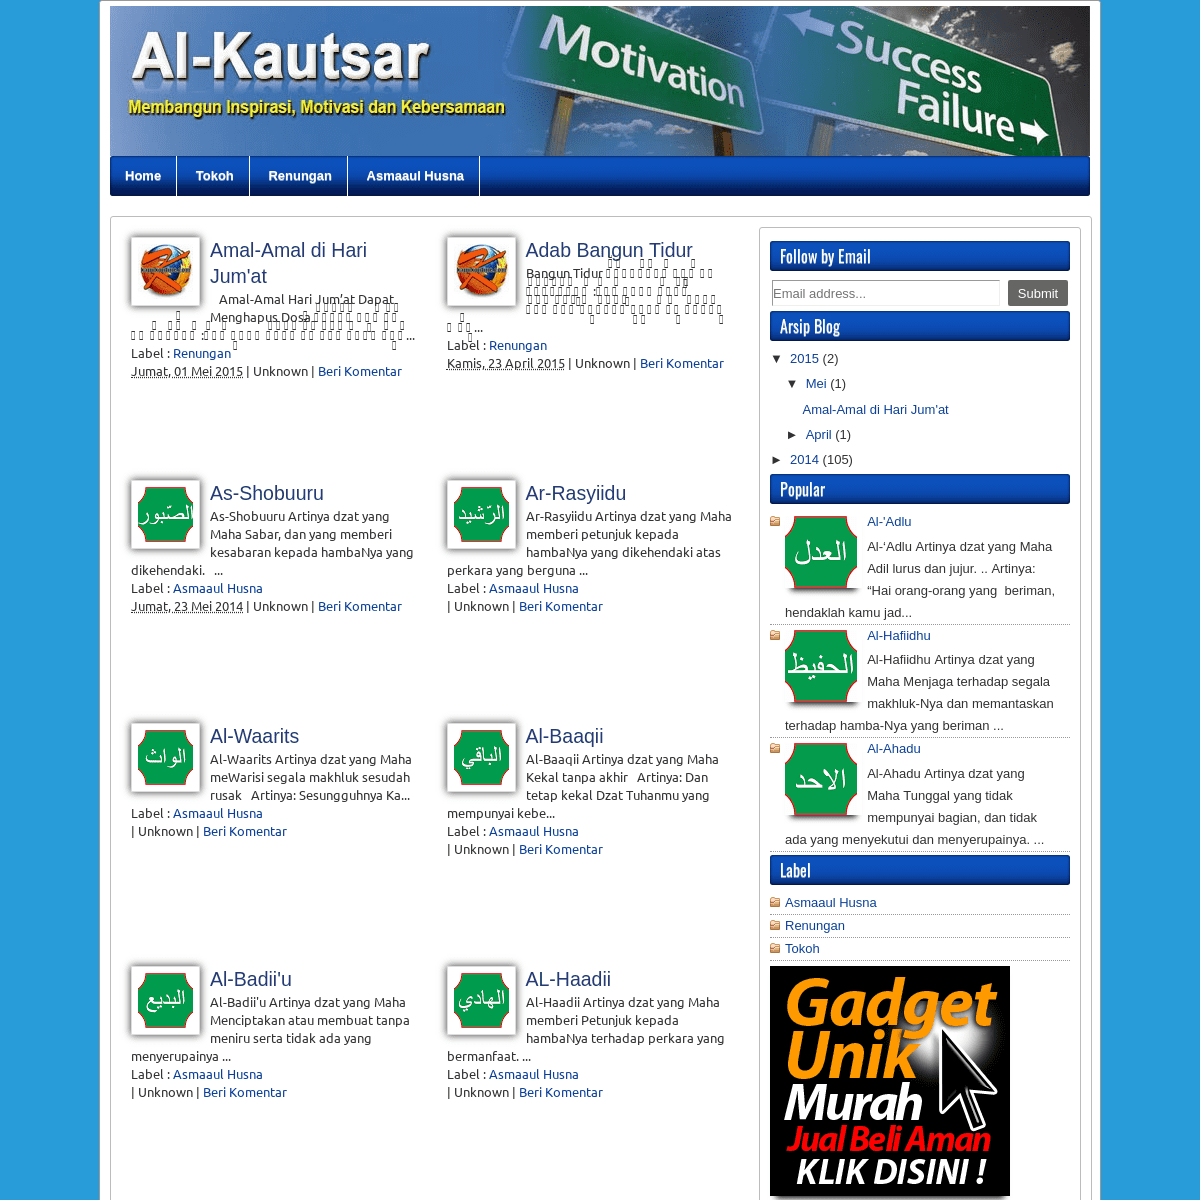 Al-Kautsar